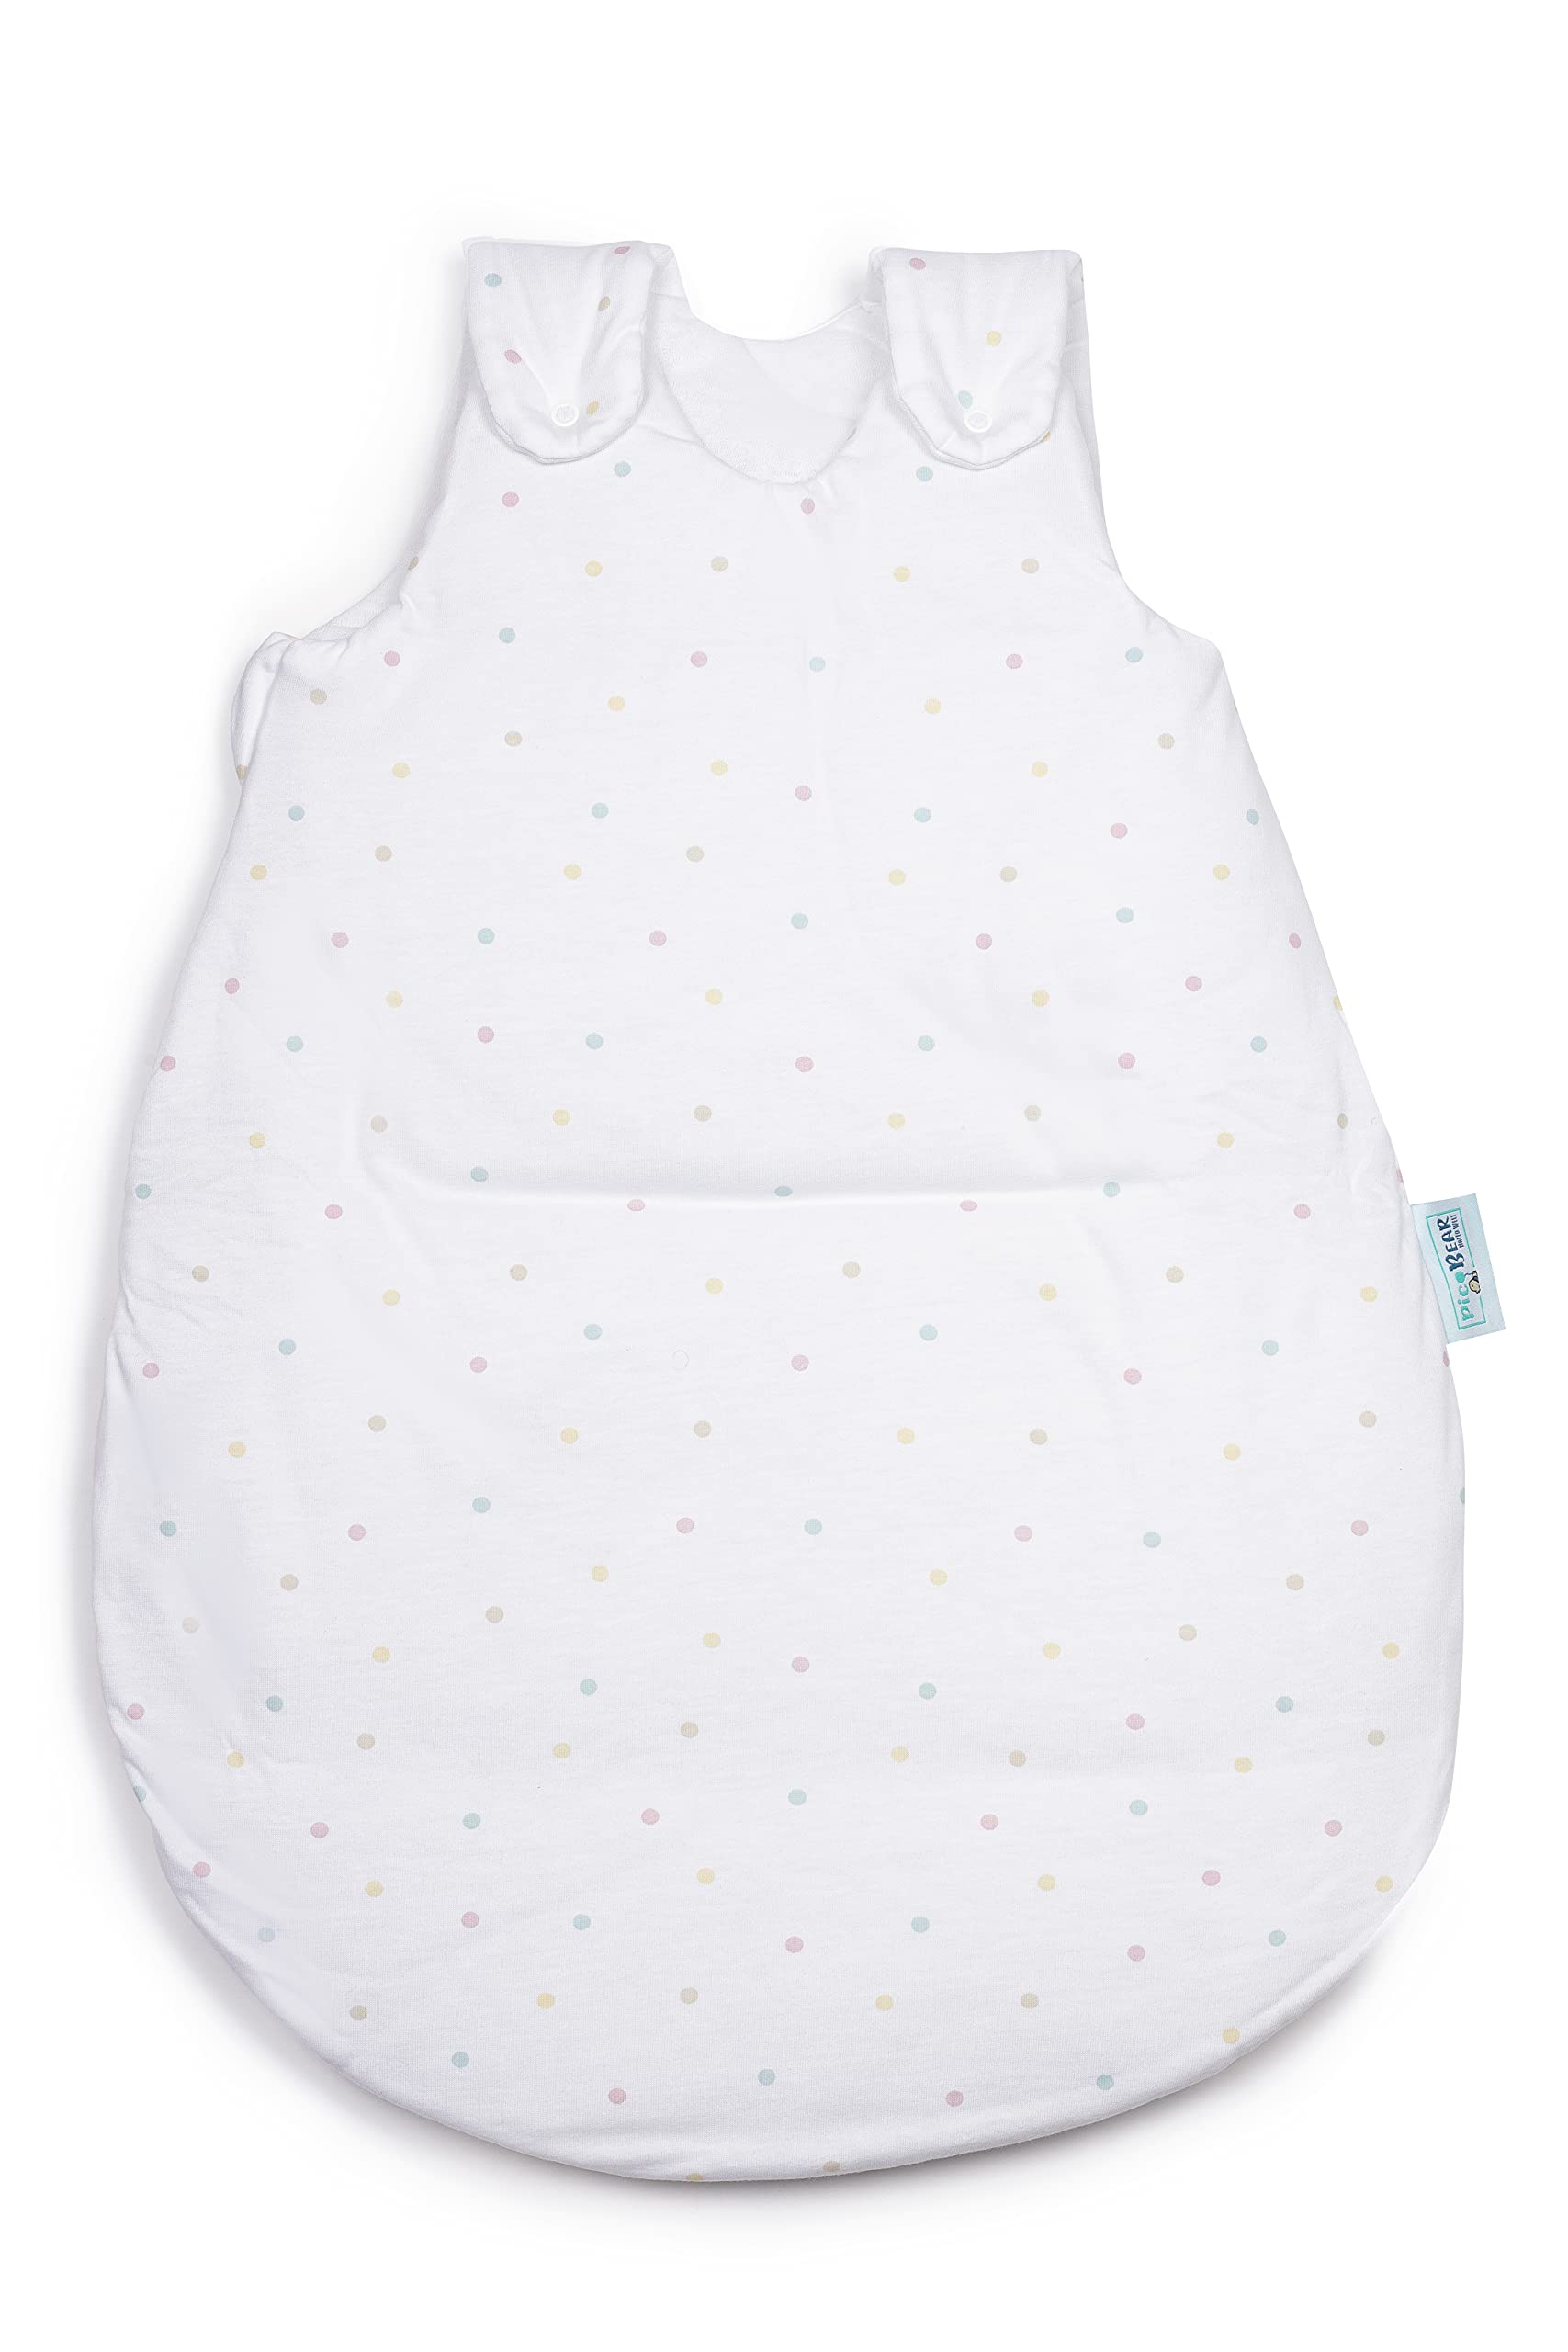 pic Bear Premium Babyschlafsack aus Jersey-Baumwolle – Atmungsaktiv, Mitwachsend und für Ganzjahres-Nutzung mit verstellbaren Größen 86/92 Punkte bunt